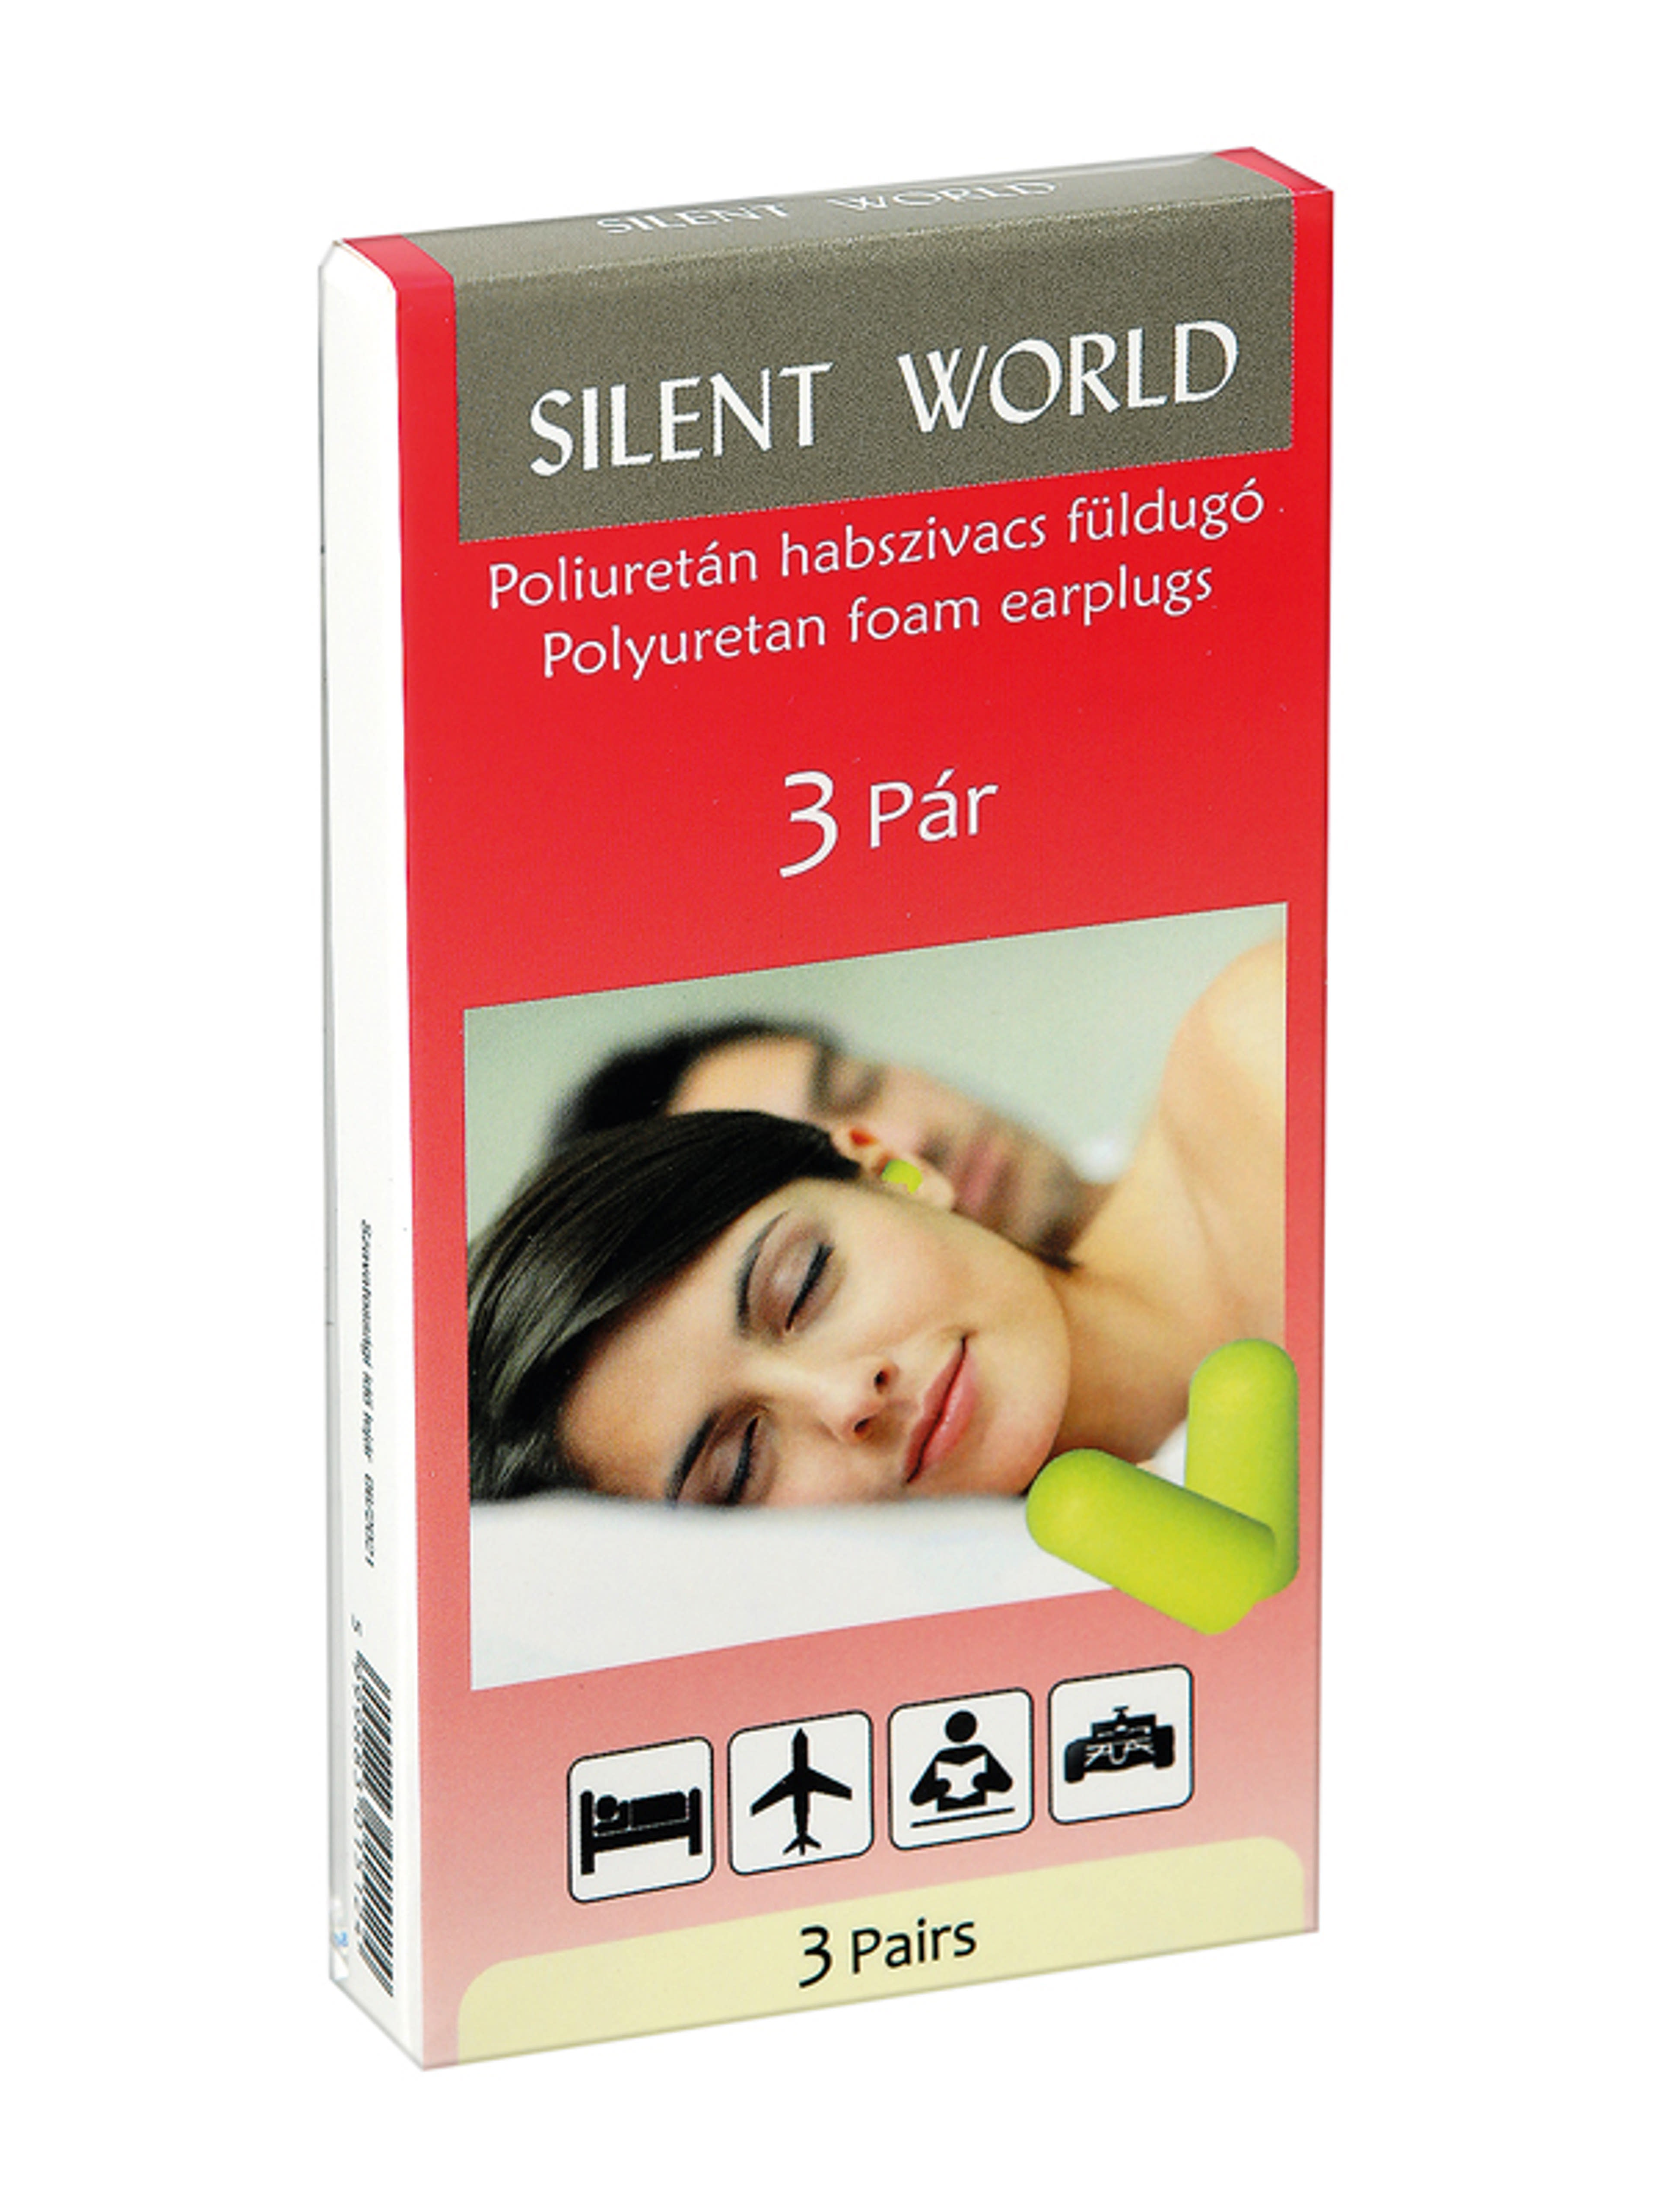 Silent World poliuretán füldugó - 3 db